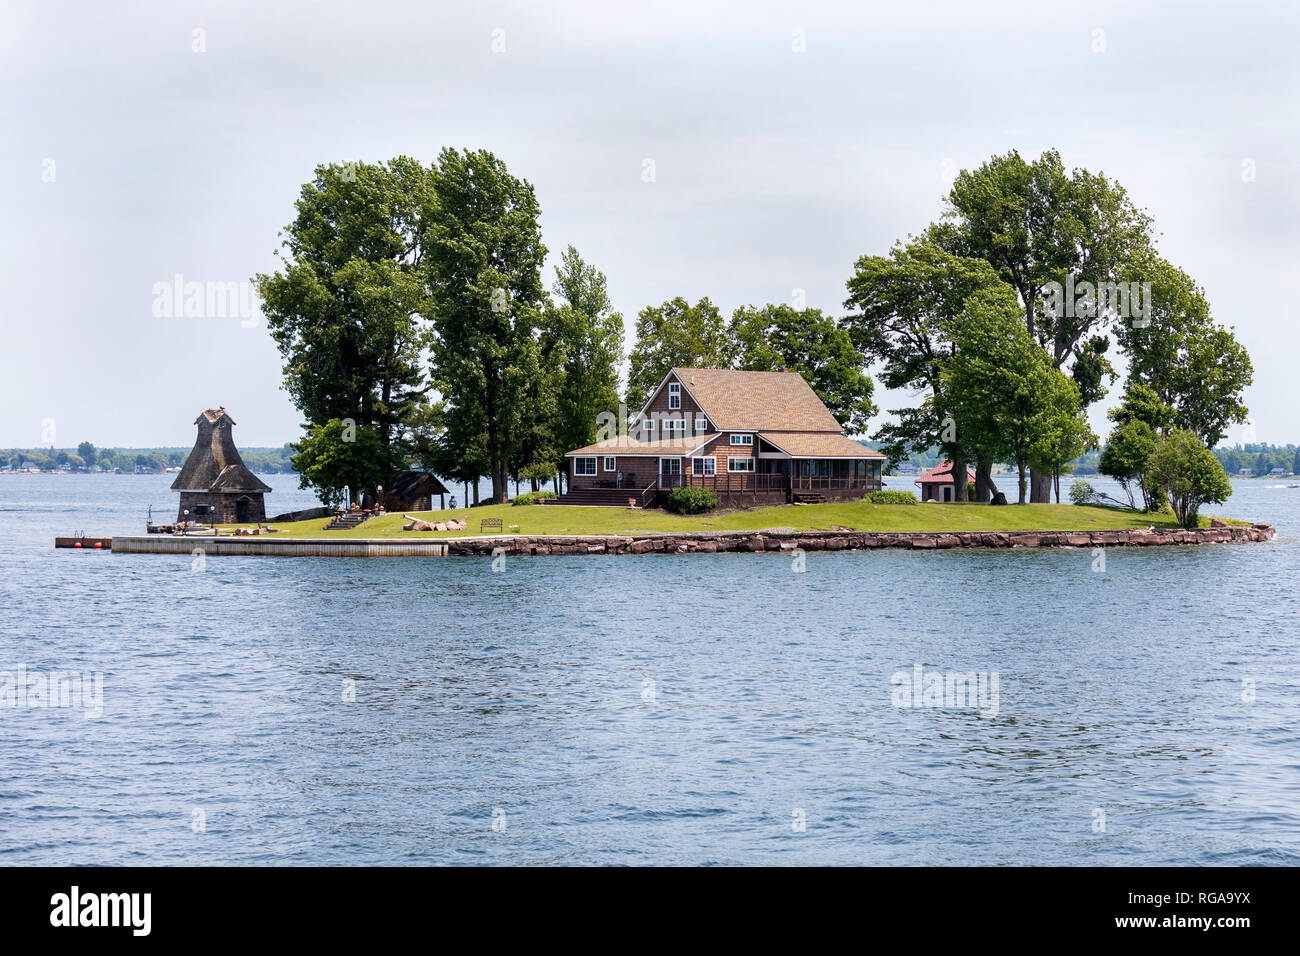 Le parc national des Mille-Îles, Saint Lawrence River, Ontario, Canada, le 17 juin 2018 : l'un des nombreux beaux chalets sur l'archipel en été Banque D'Images